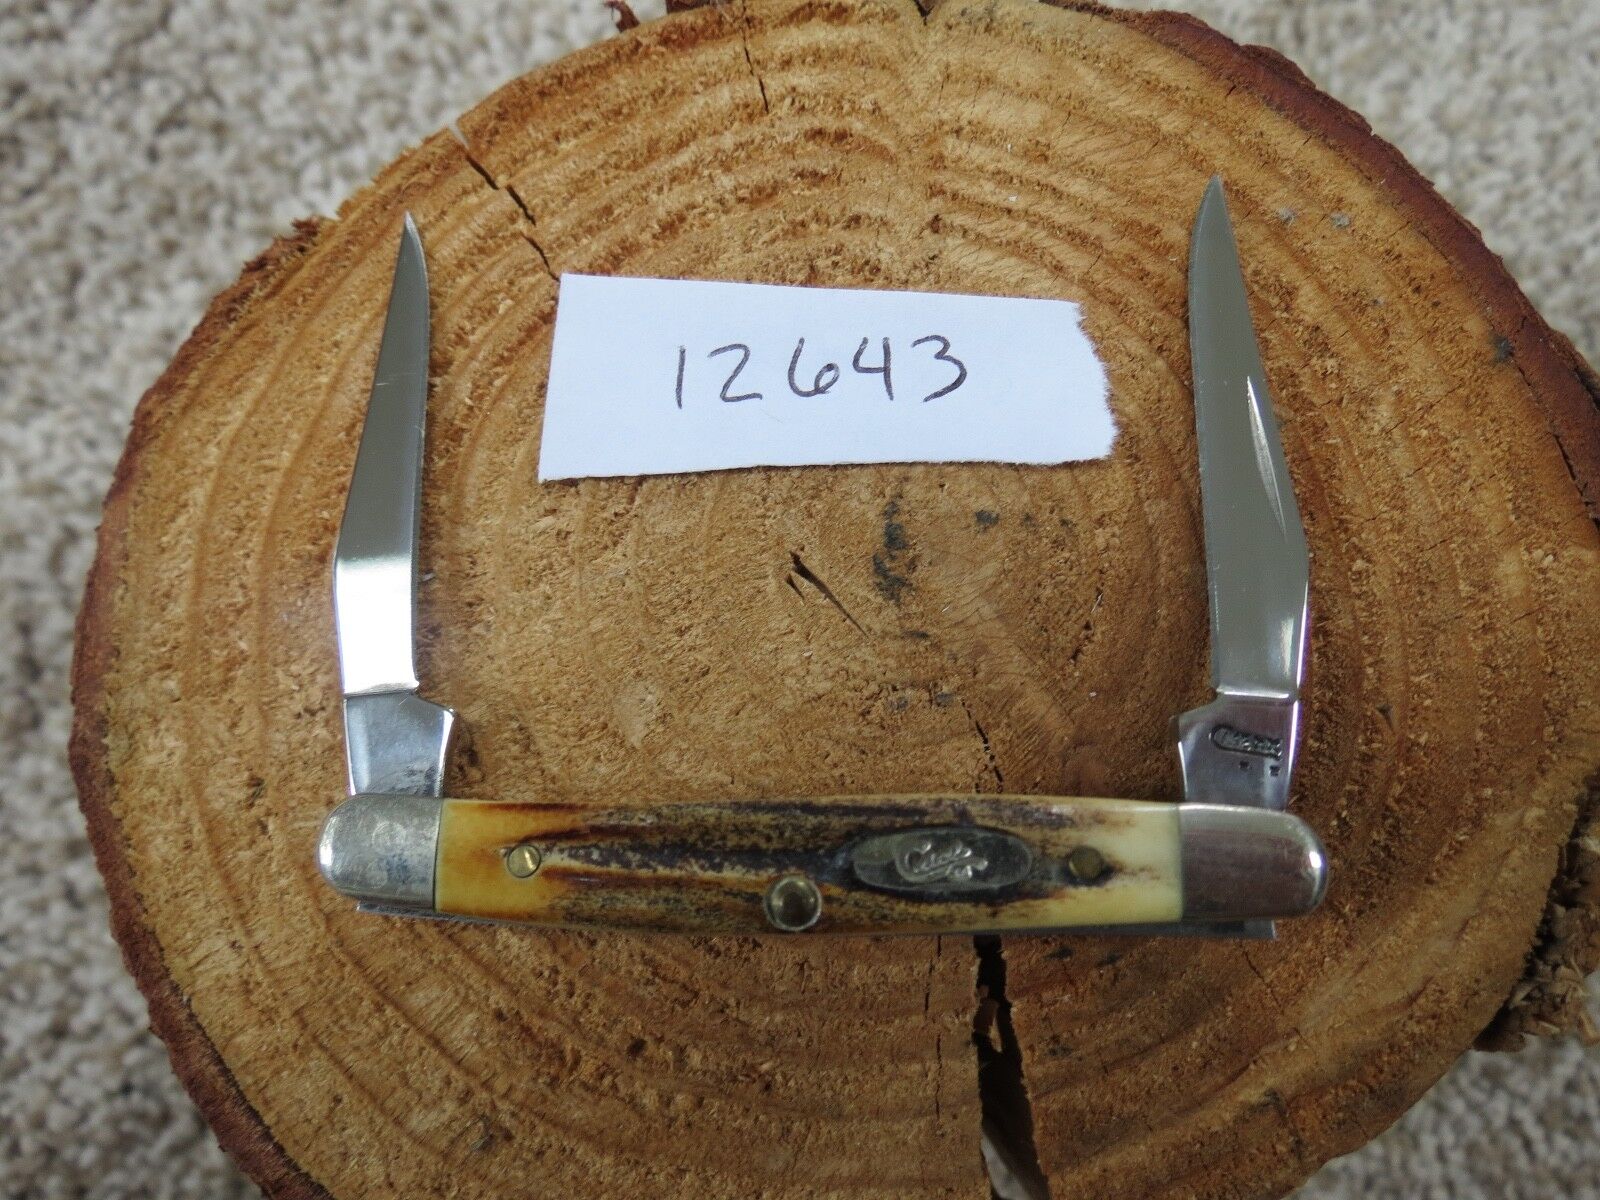 Case Tiny Muskrat knife (lot#12643)